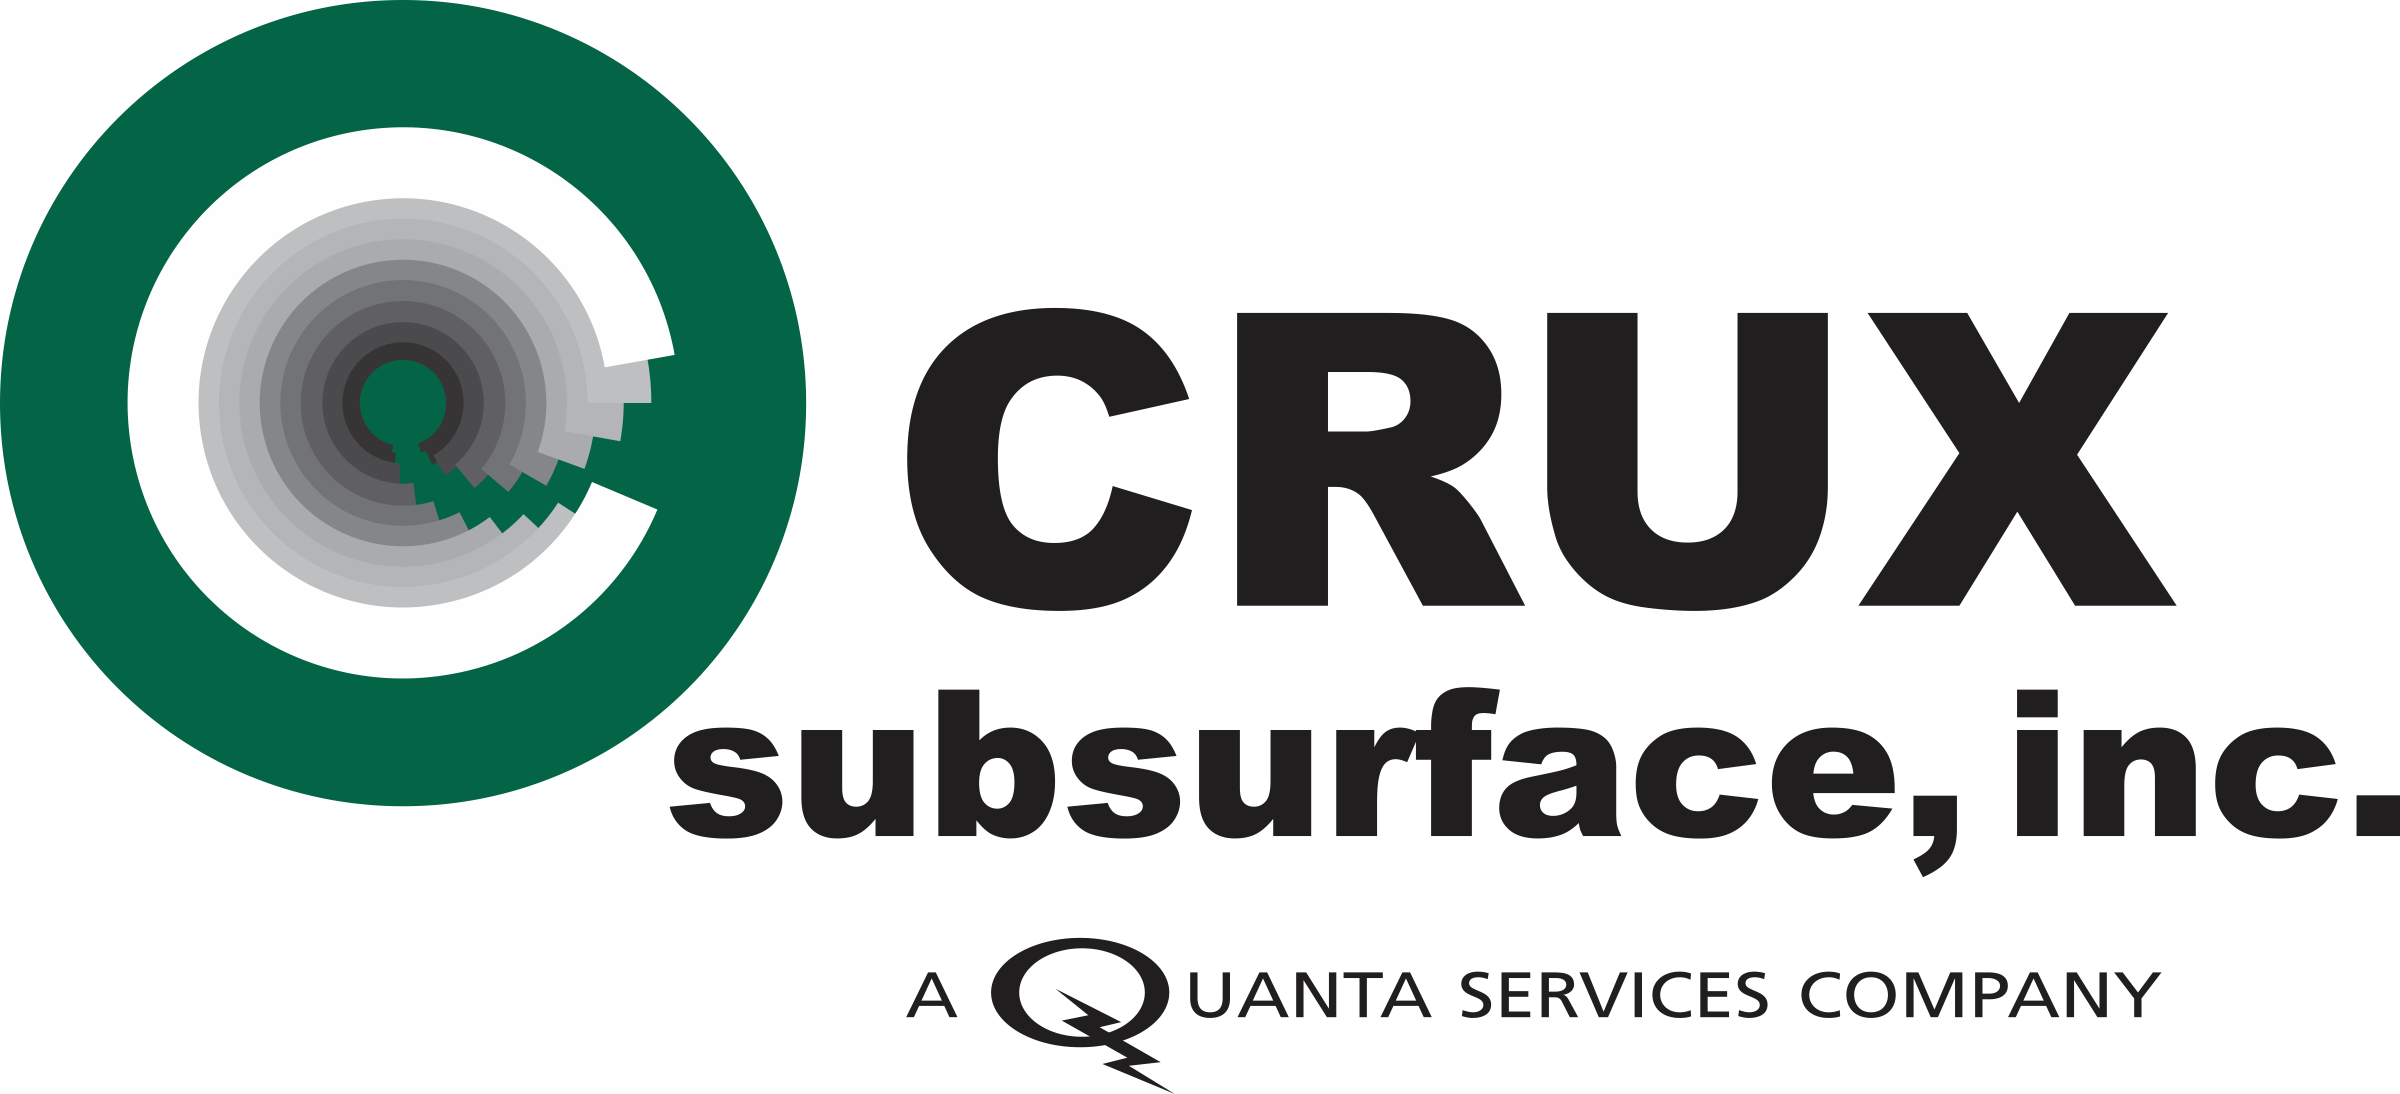 Quanta Logo - Crux acquired by Quanta Services